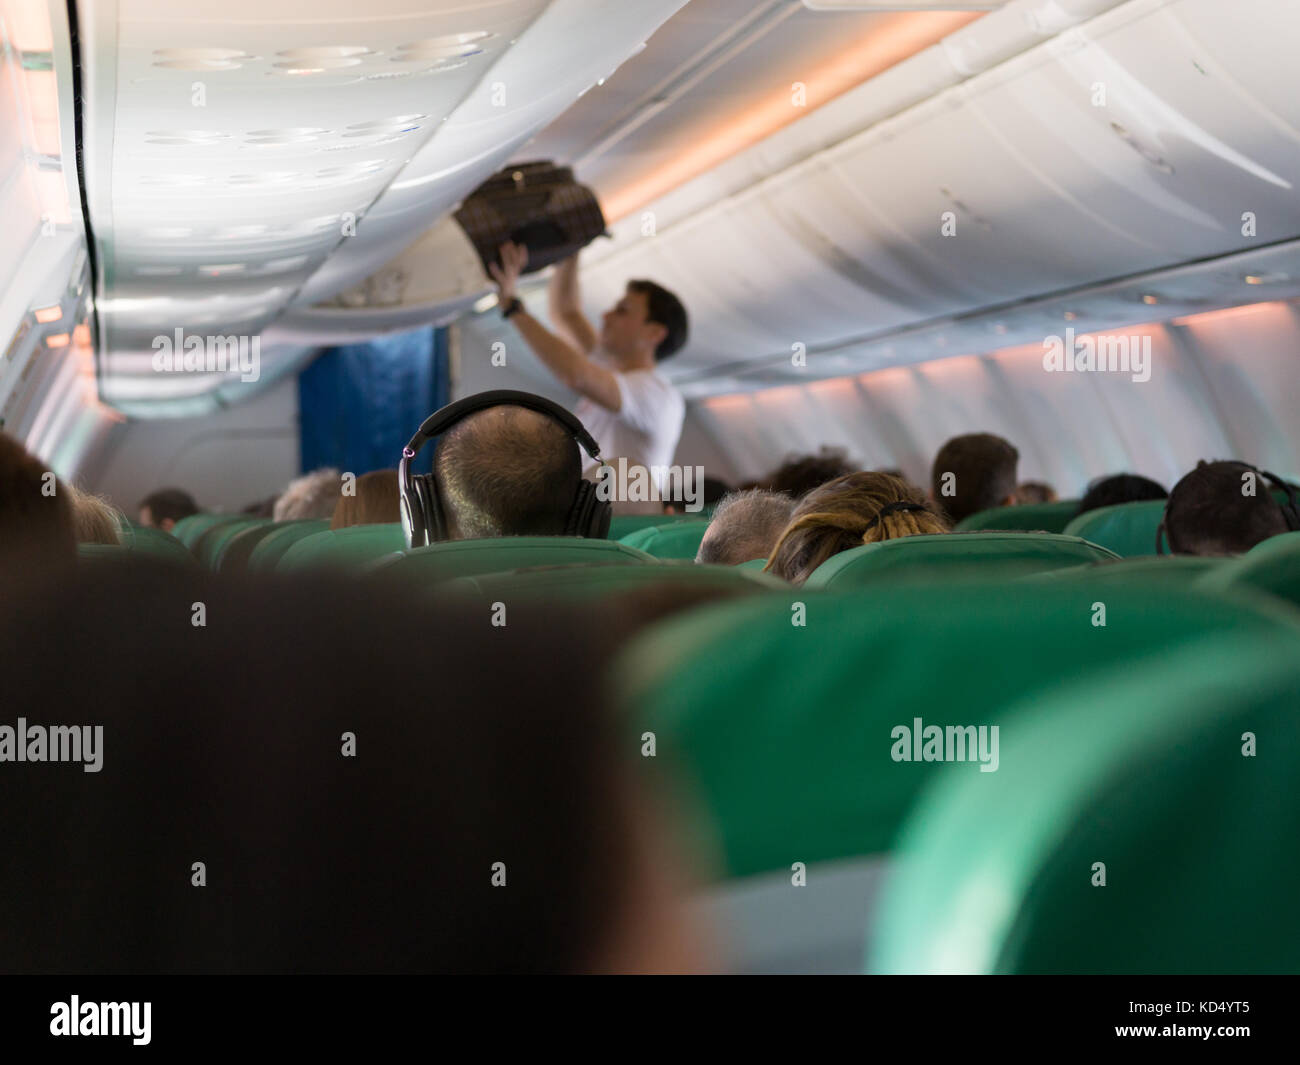 L'intérieur de l'avion - des gens assis sur des sièges, DSI Tetra - démo Fxpansion Banque D'Images